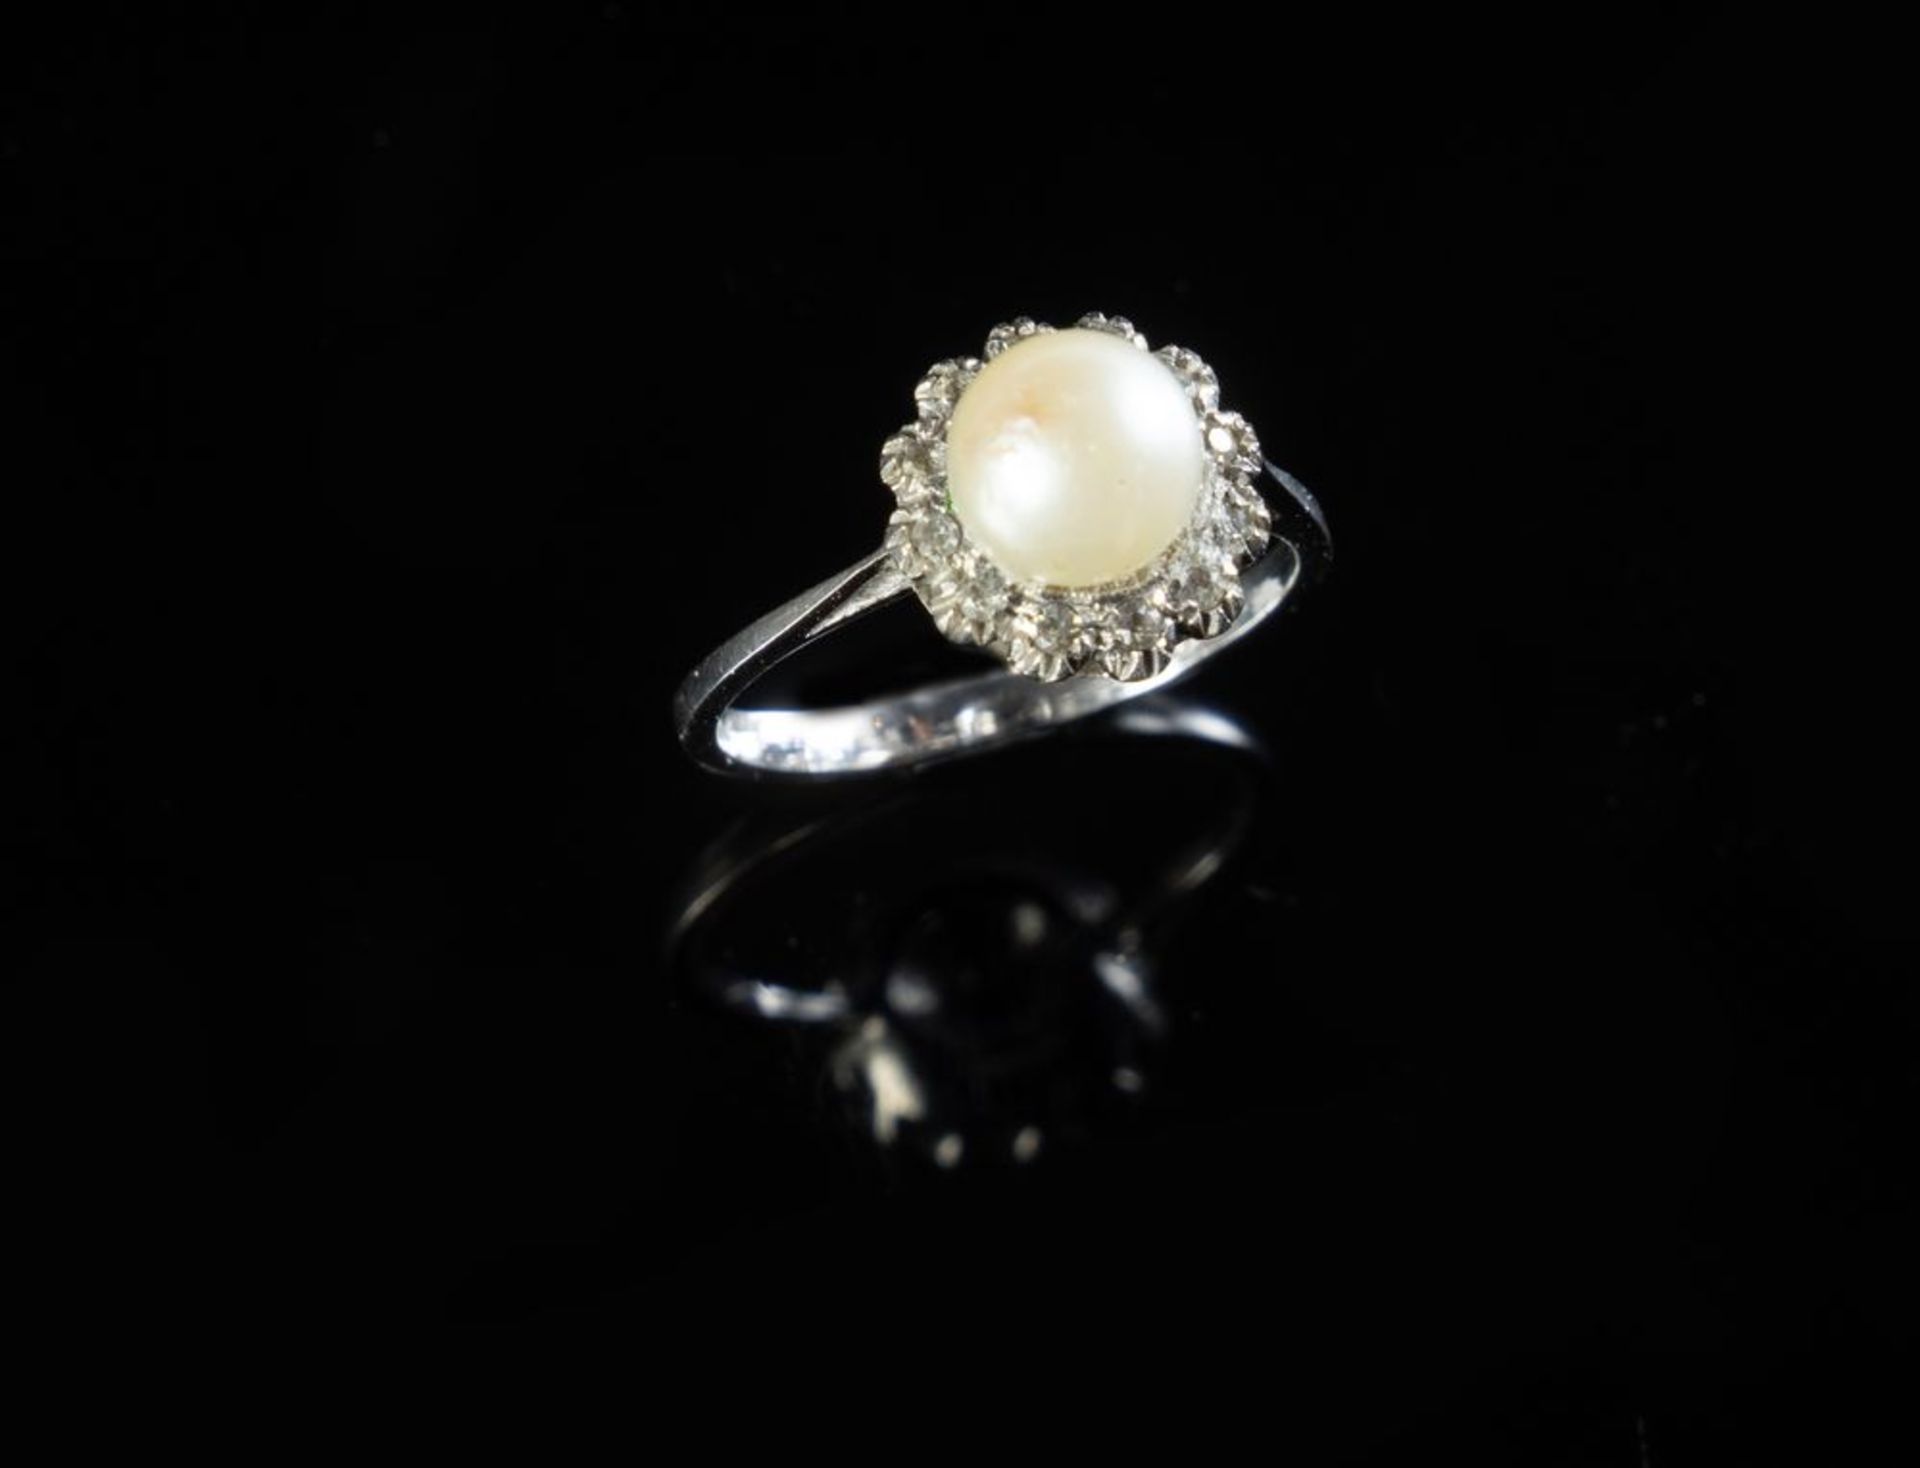 ANELLO IN ORO BIANCO CON PERLA E DIAMANTI
Anello in oro bianco 18k con perla coltivata calibro 7,20 